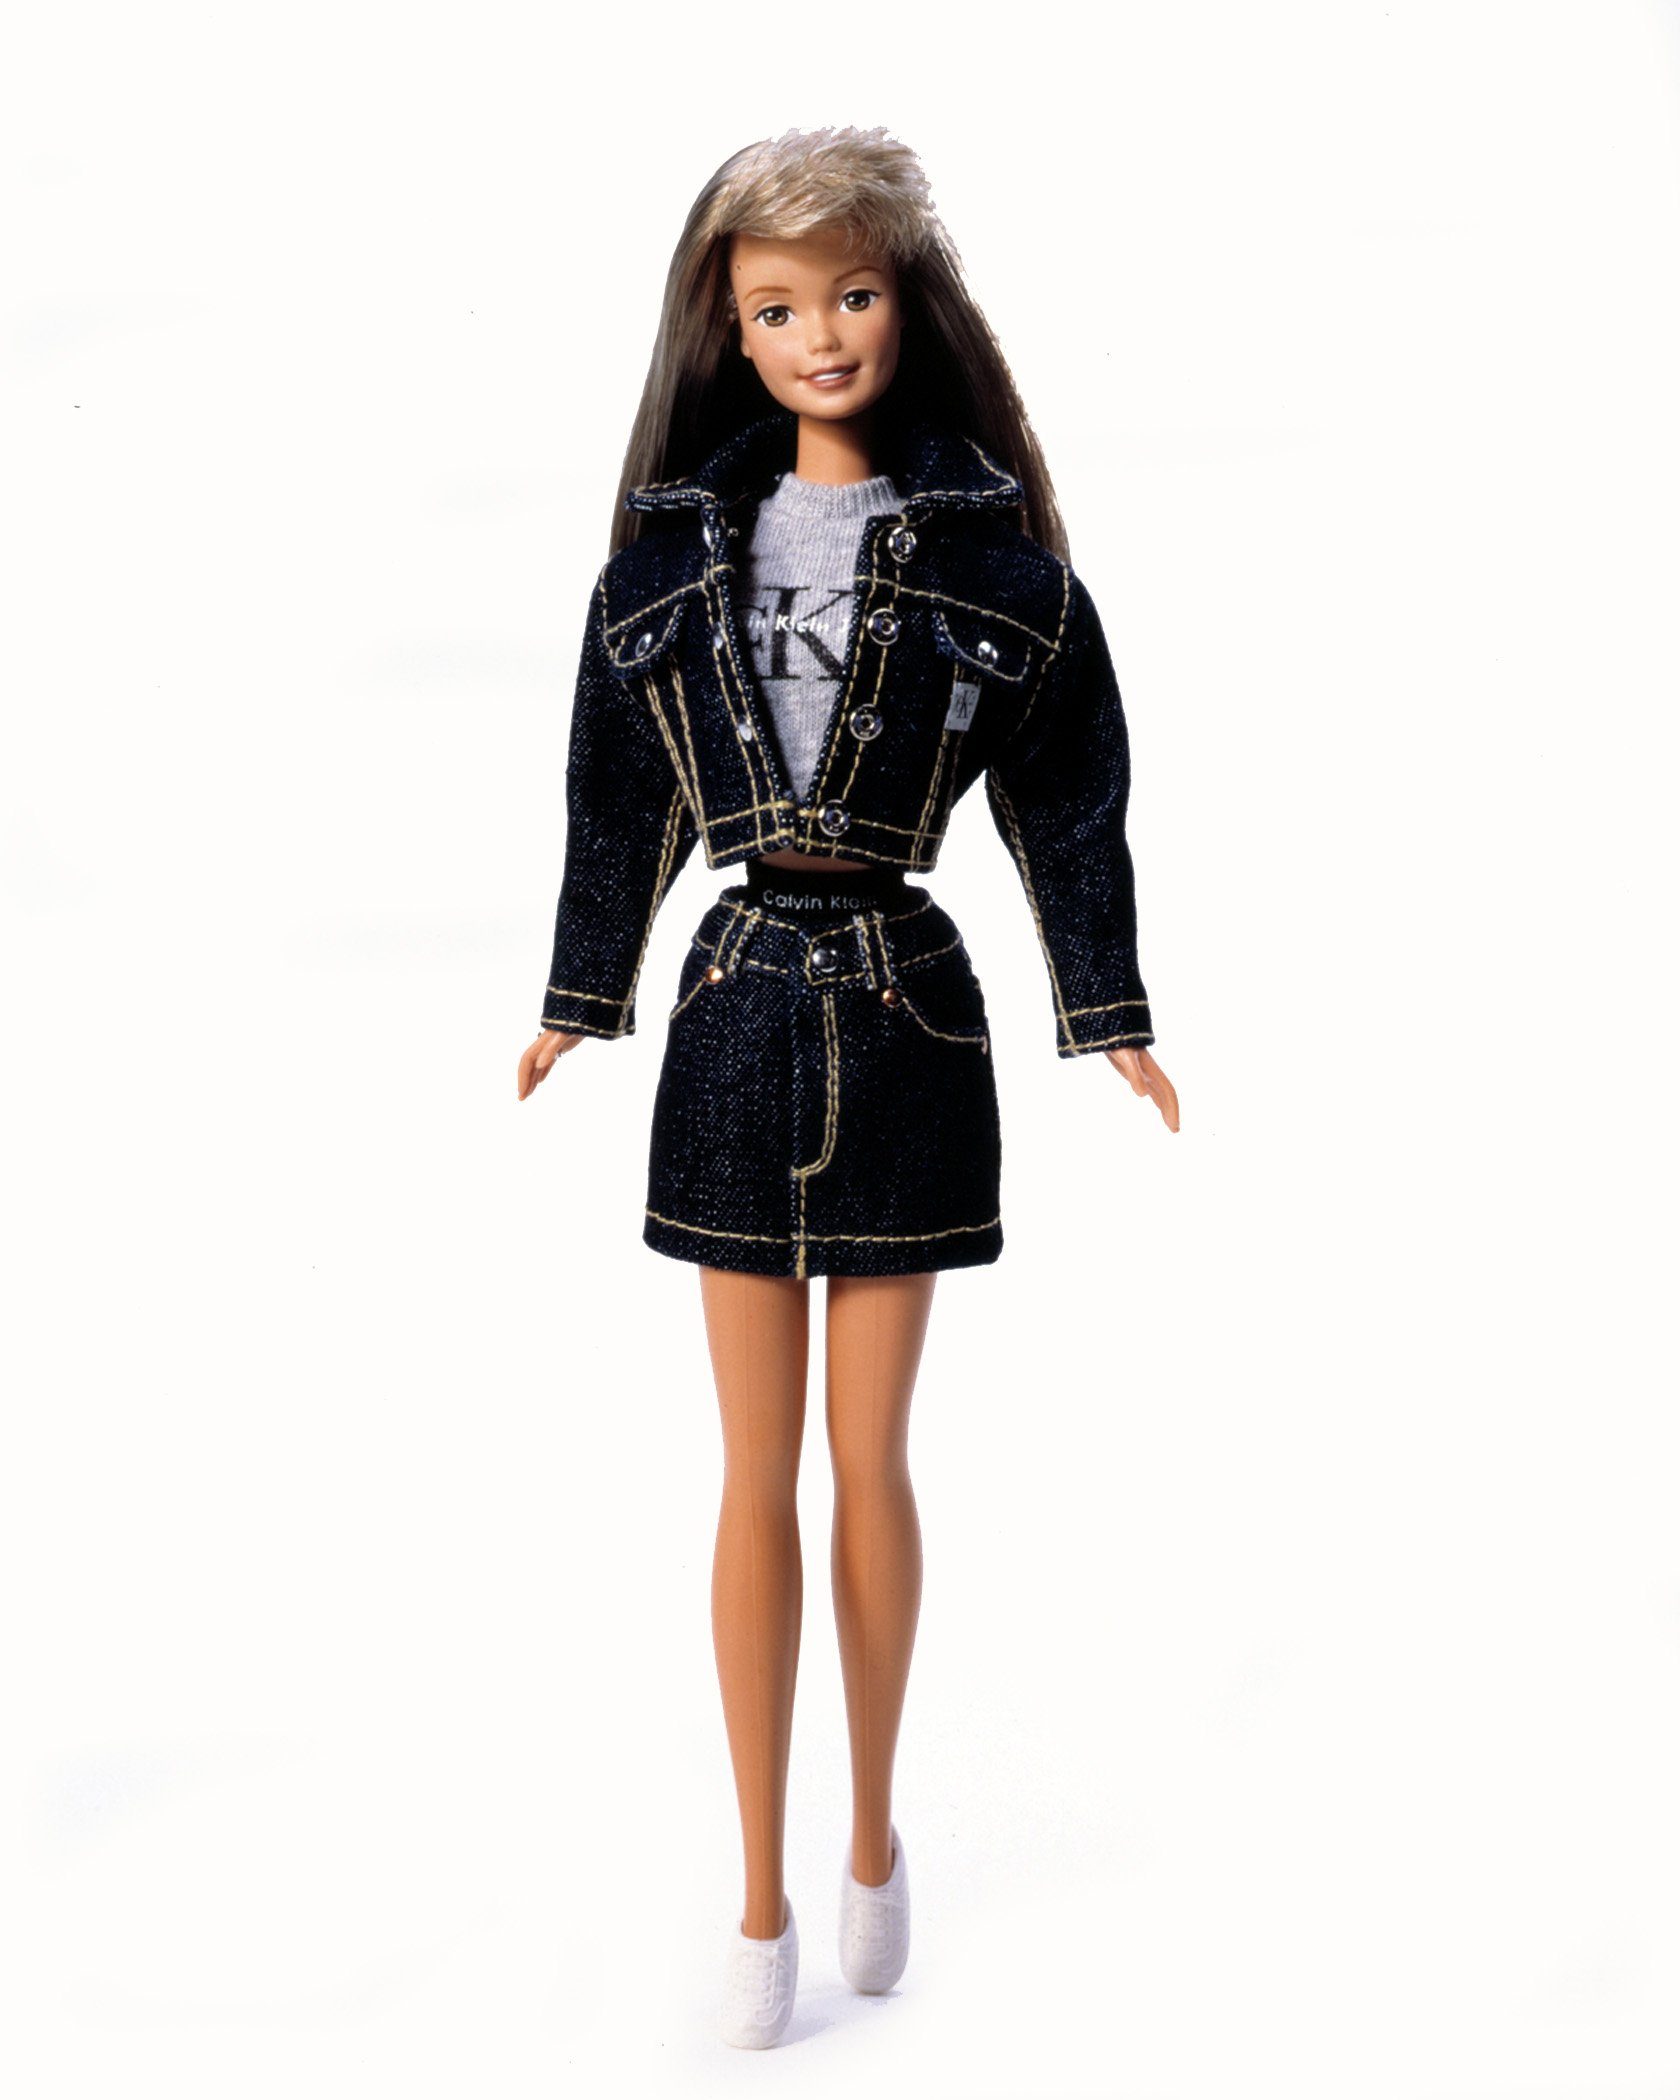 calvin klein barbie doll